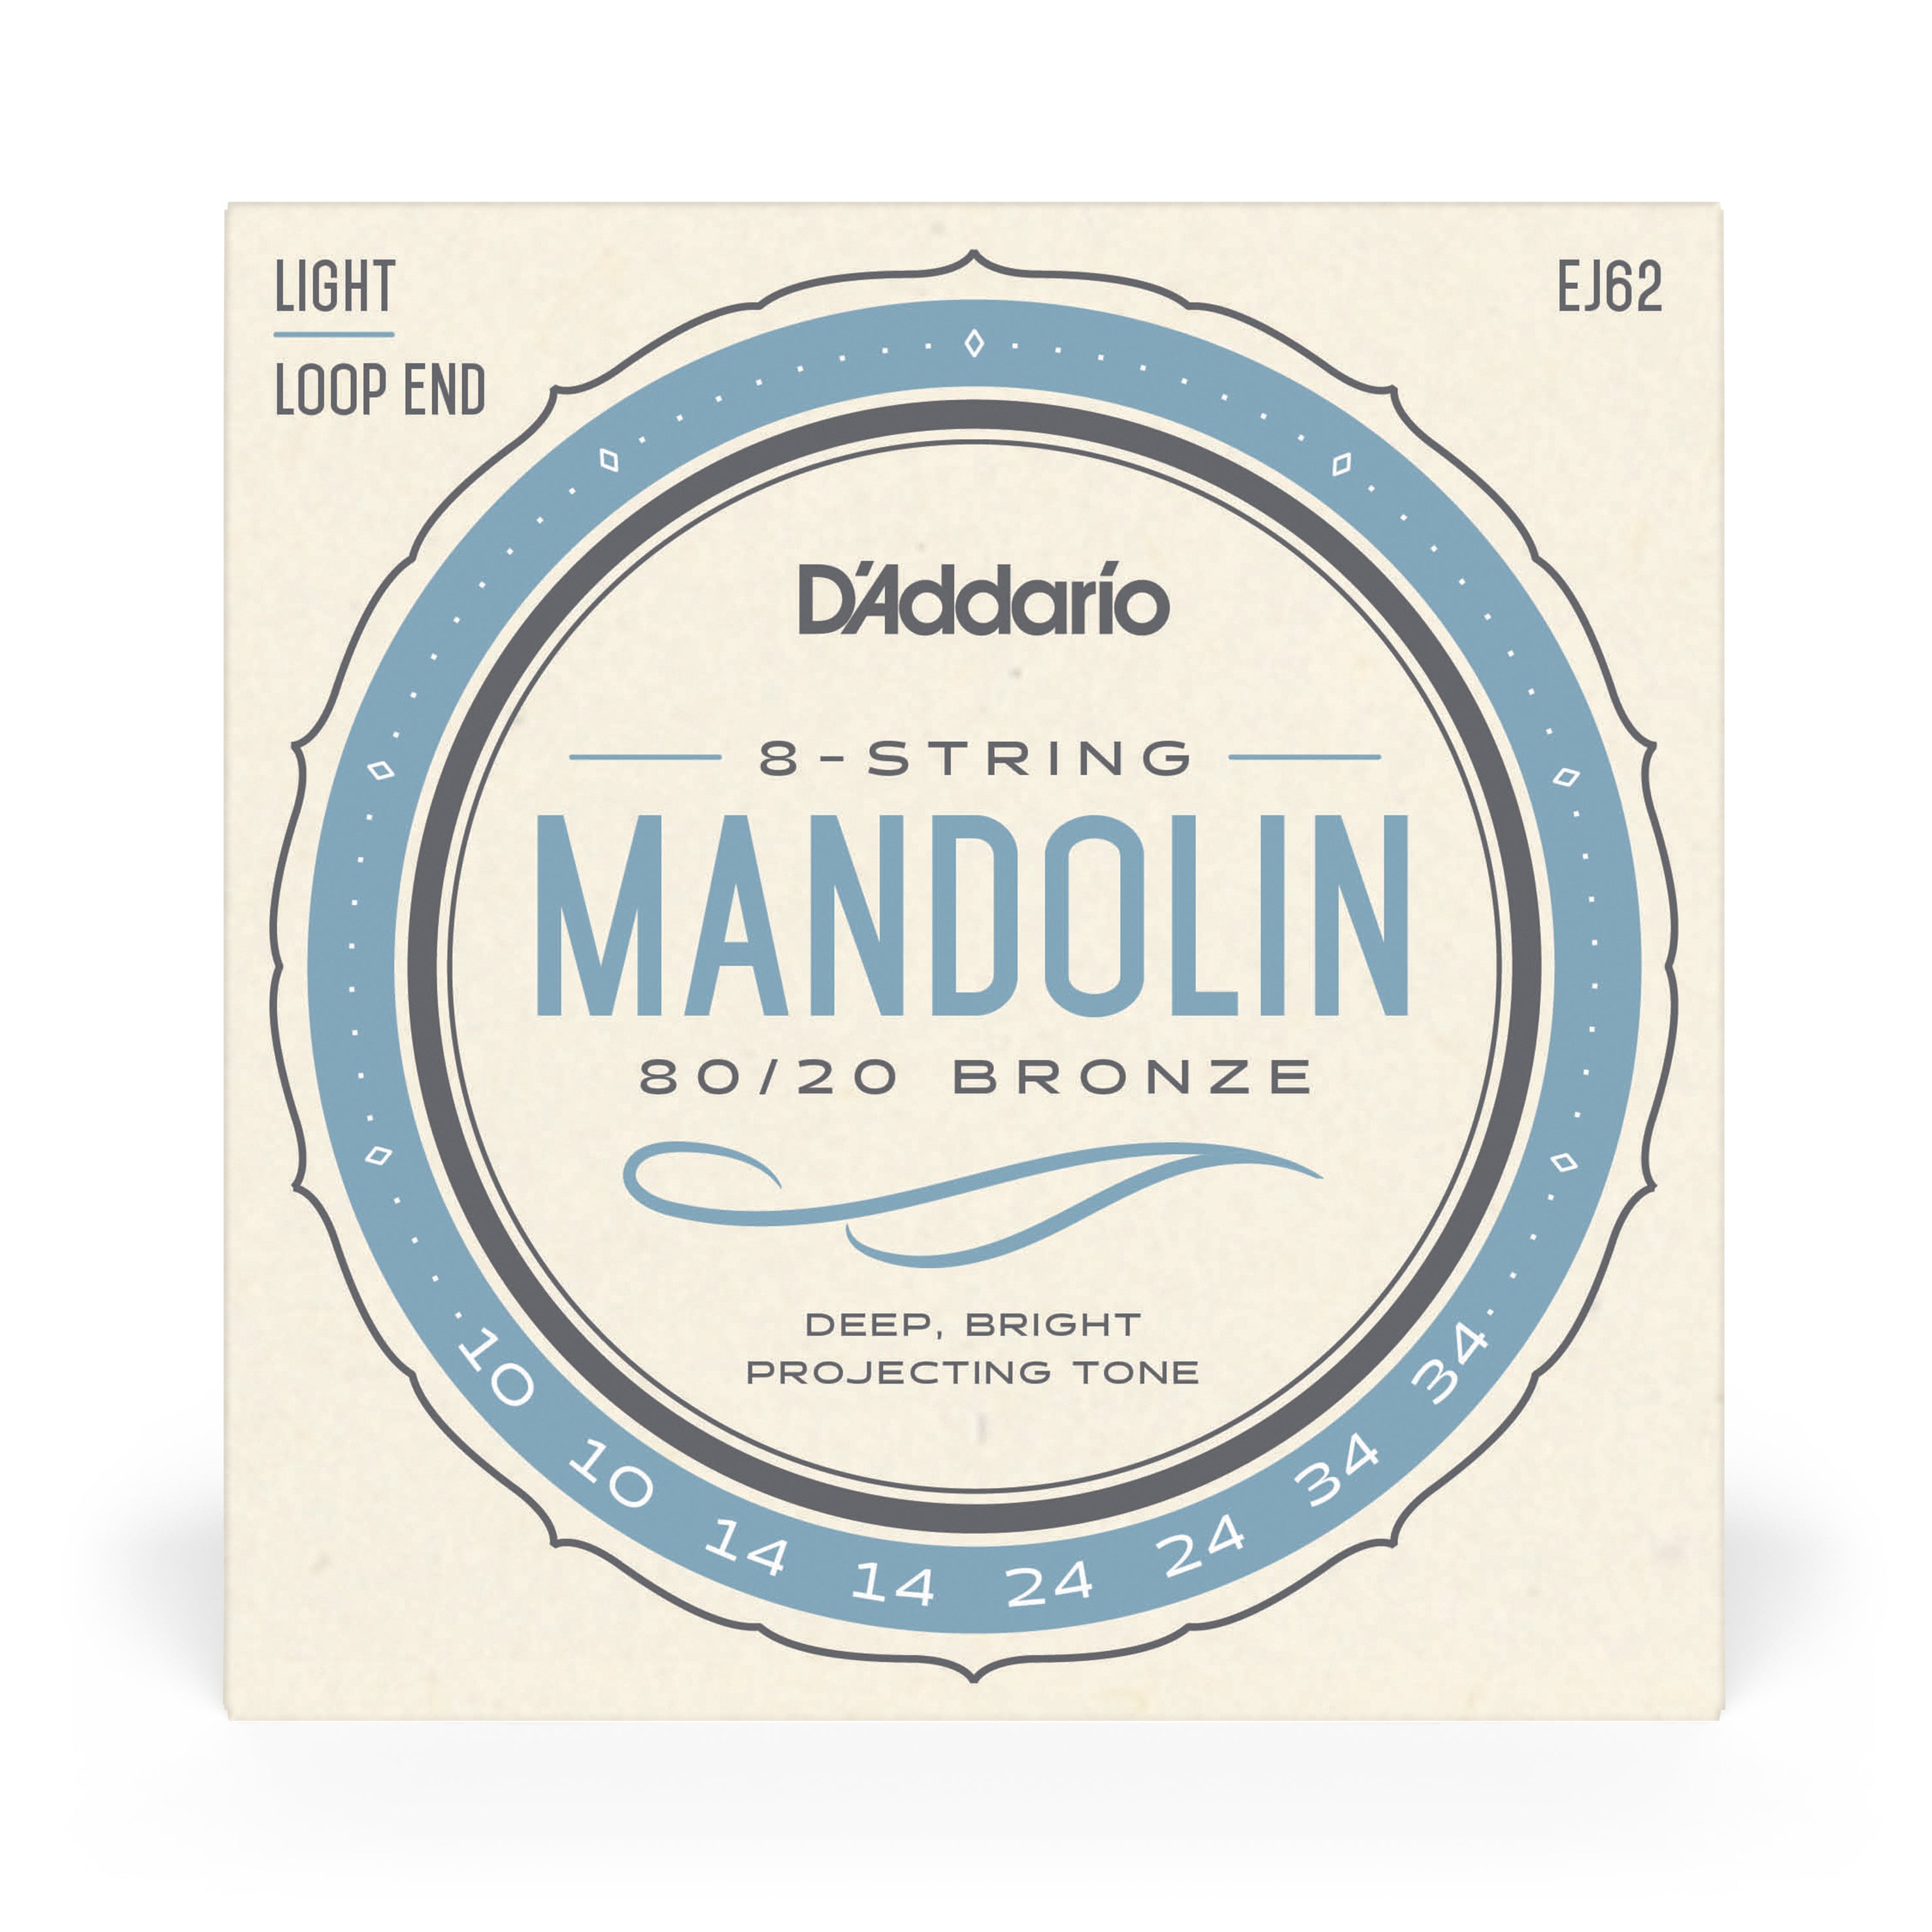 D'Addario EJ62 80/20 Bronze Mandolin Loopend 10-34 Light Strings